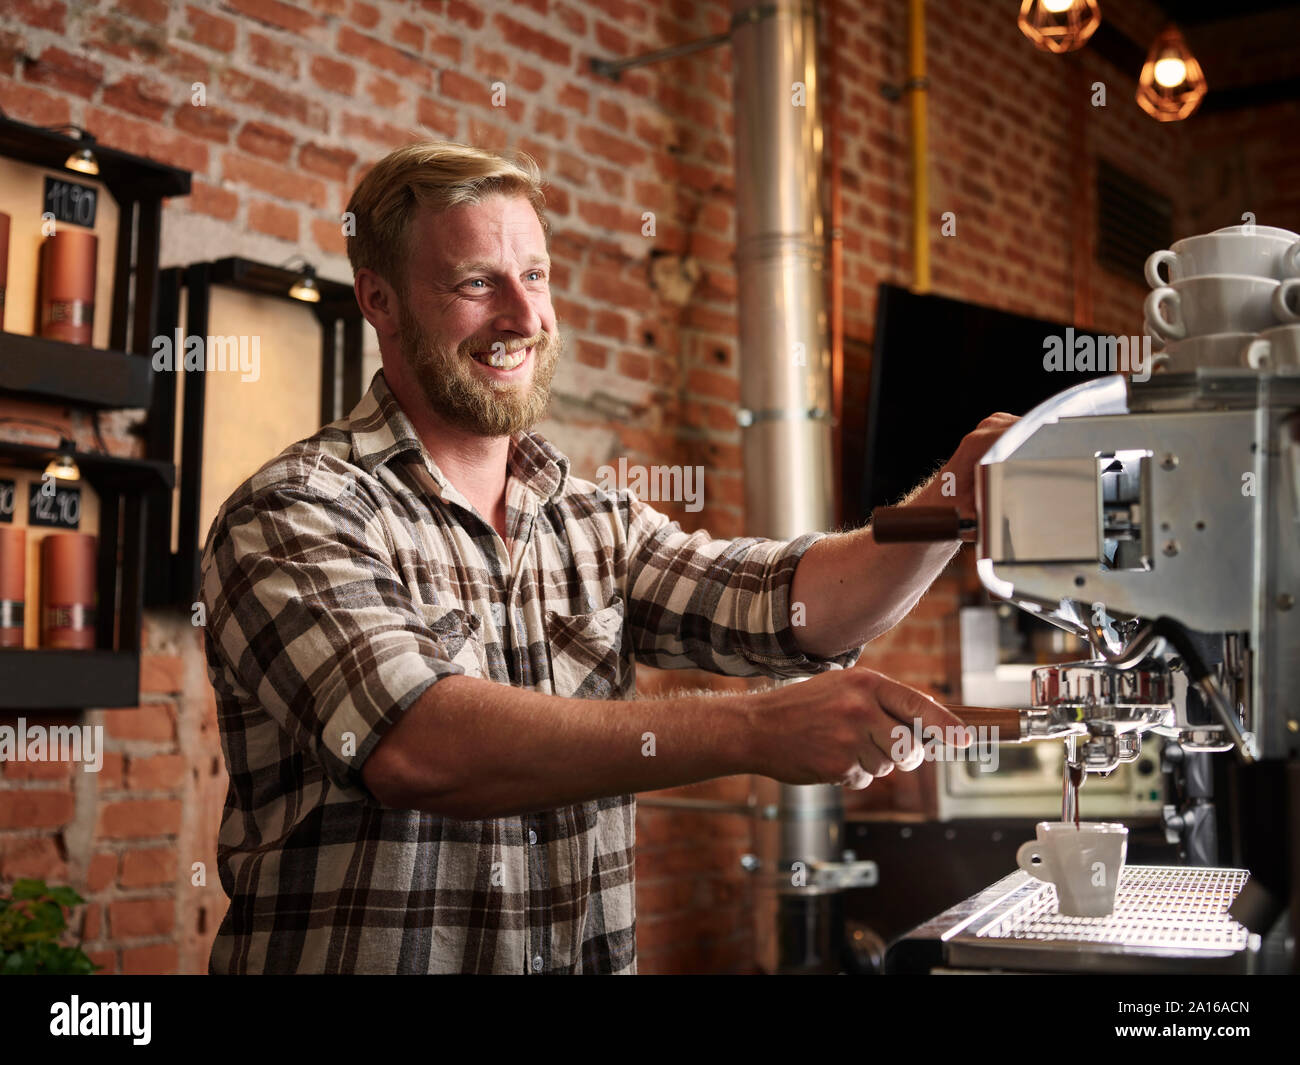 Man preparing espresso in a cafe Stock Photo